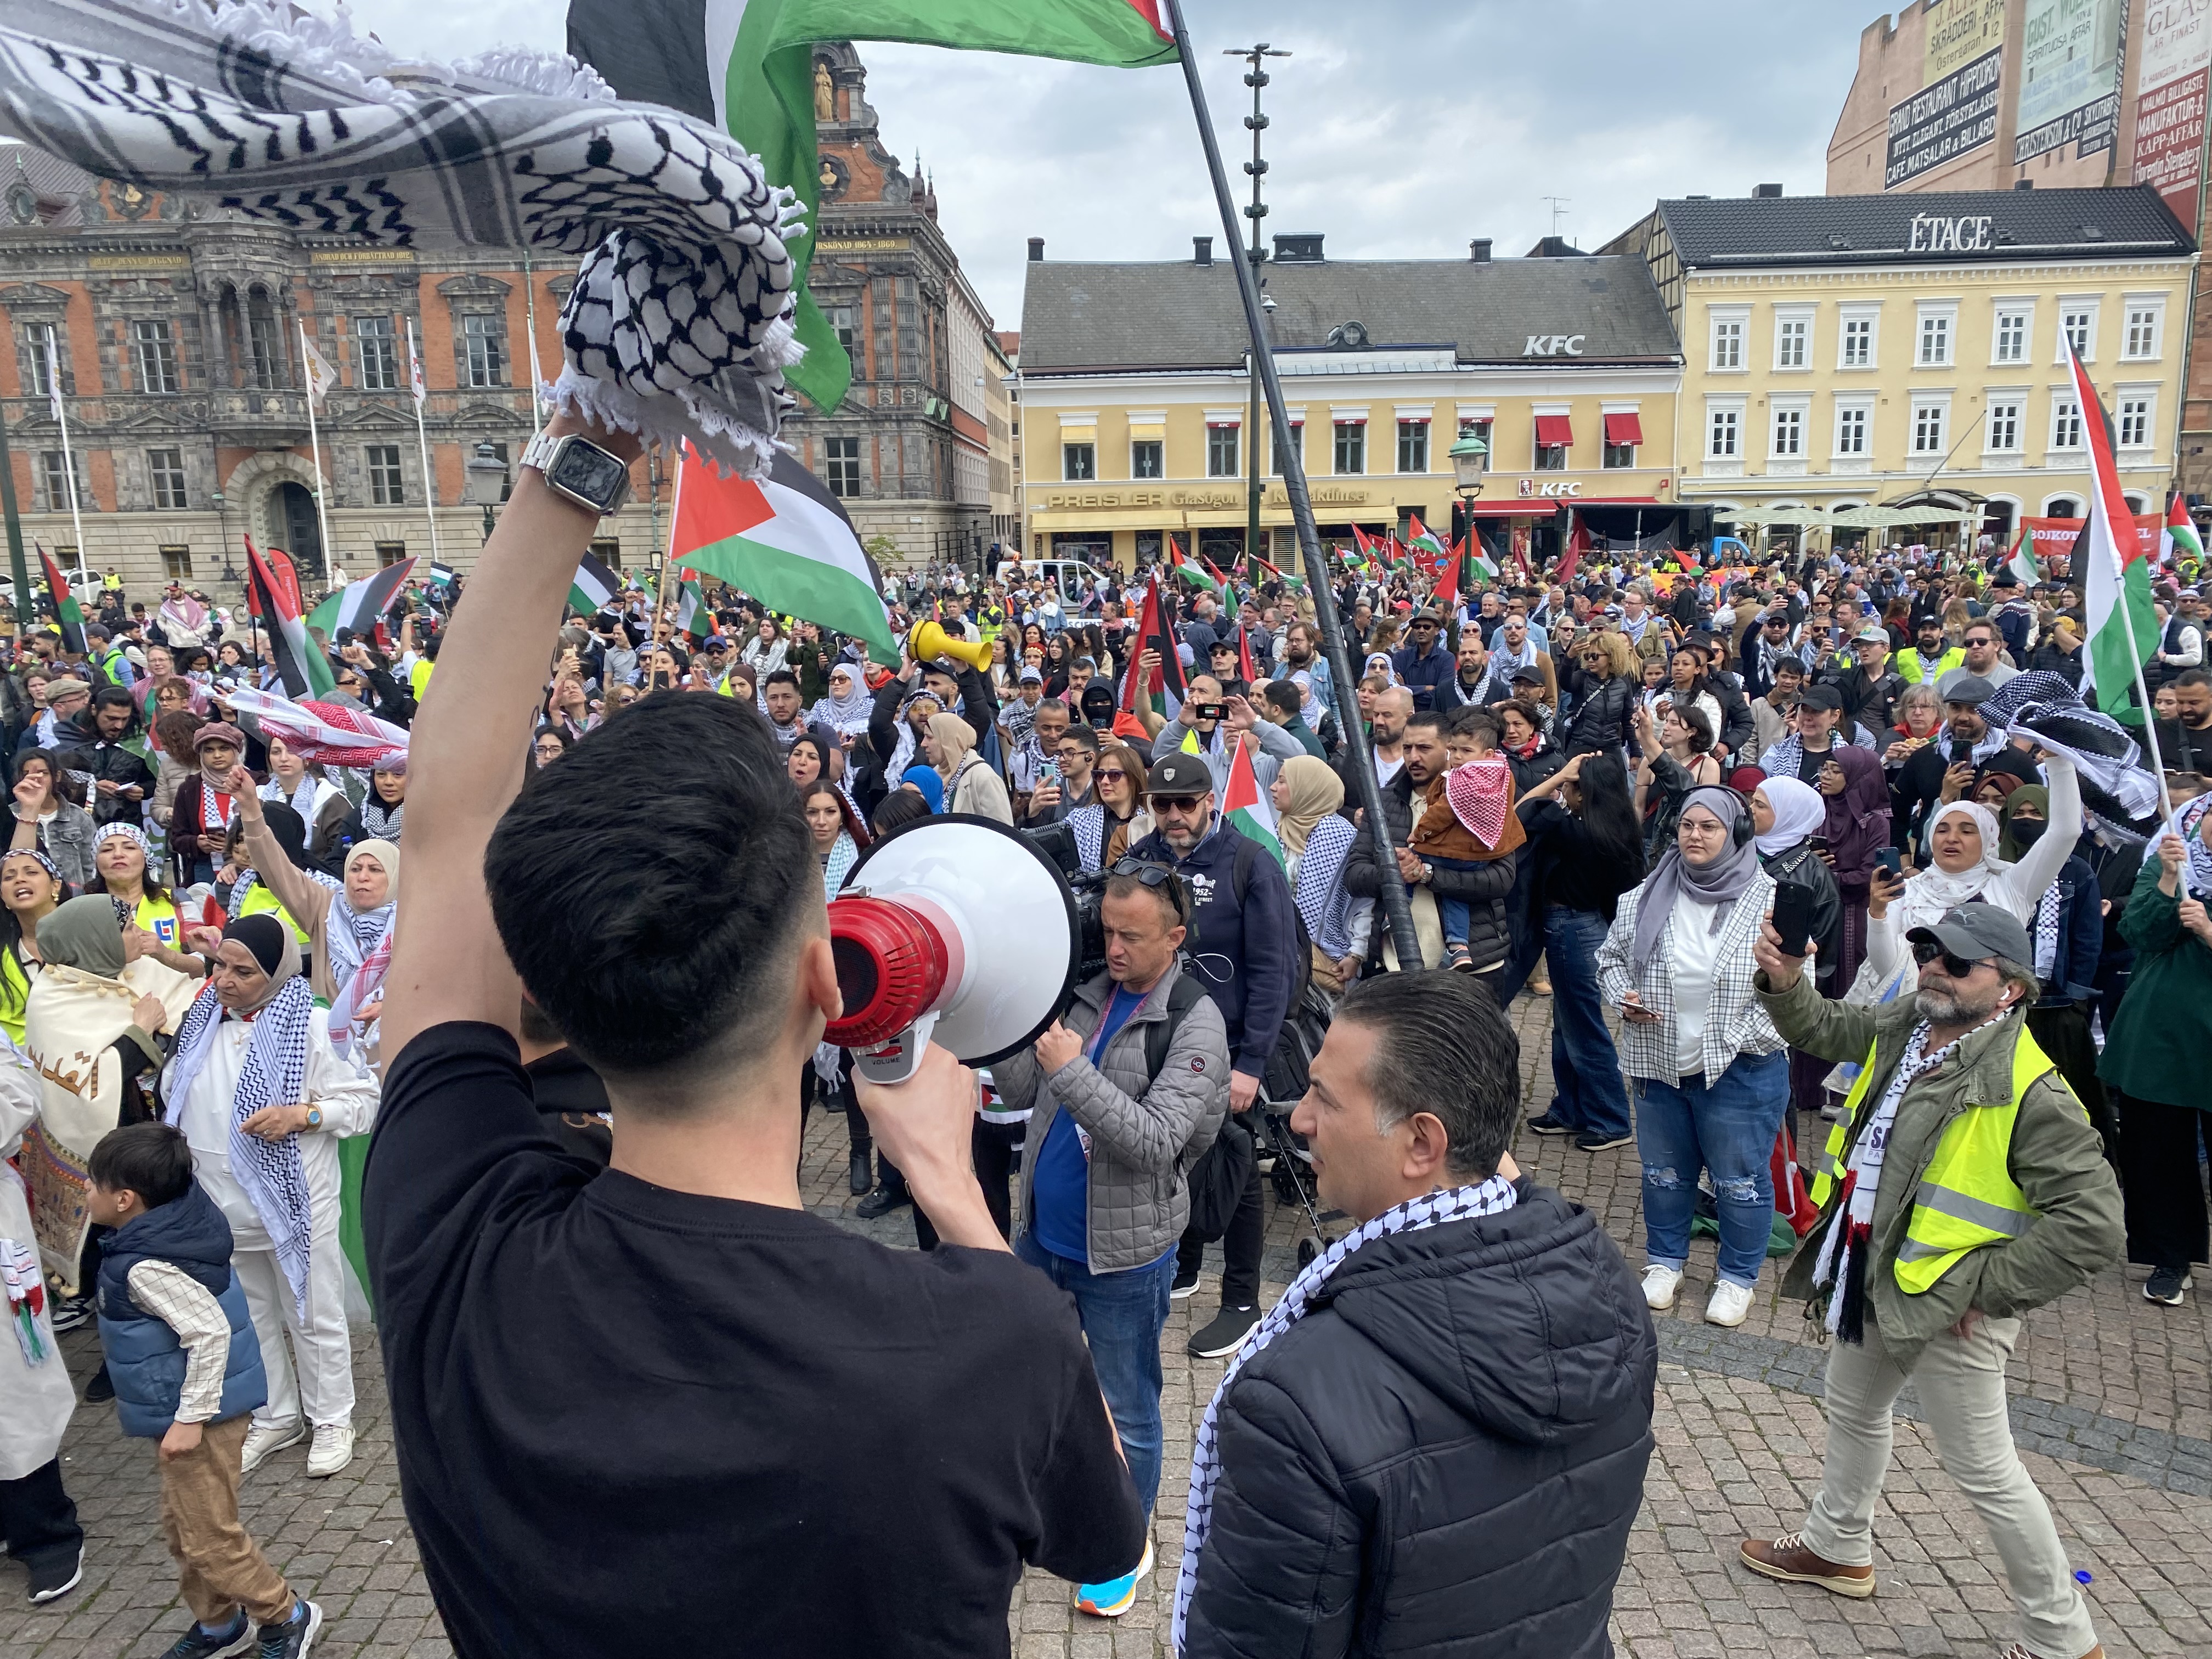 Des milliers de manifestants étaient réunis sur la place Stortorget de Malmö (Suède), ce jeudi 9 mai, pour protester contre la participation d'Israël à l'Eurovision. LP/Benoît Daragon